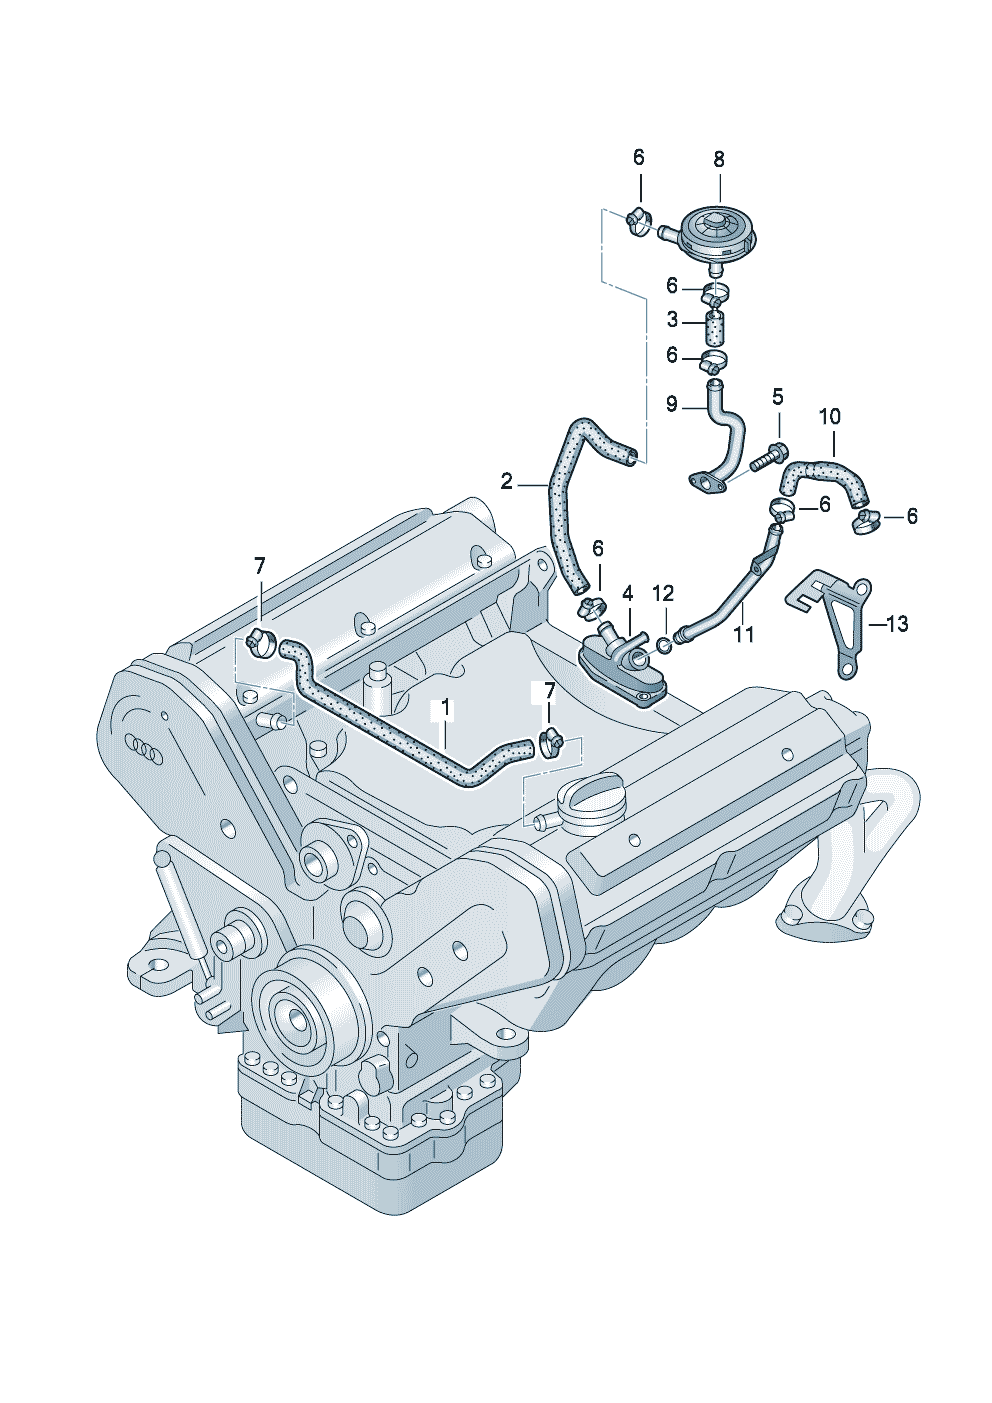 Вентиляция для блока цилиндров 3,7 л. - Audi A8 - a8